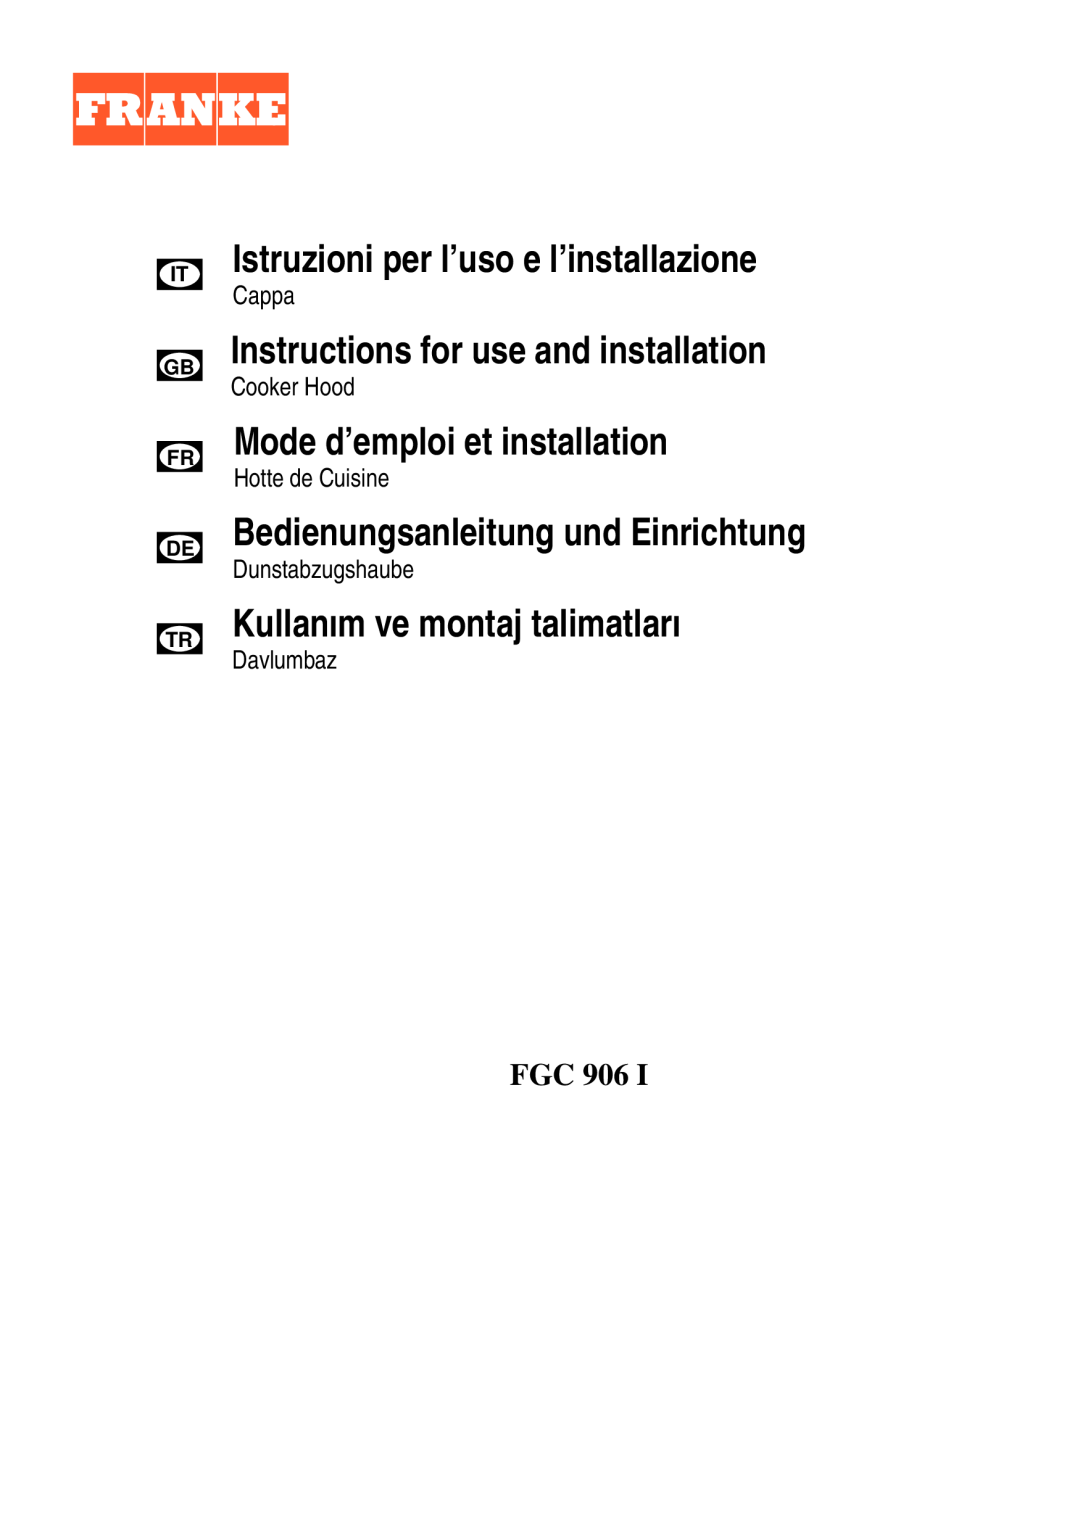 Franke Consumer Products FGC 906 I manual Istruzioni per l’uso e l’installazione, Instructions for use and installation 